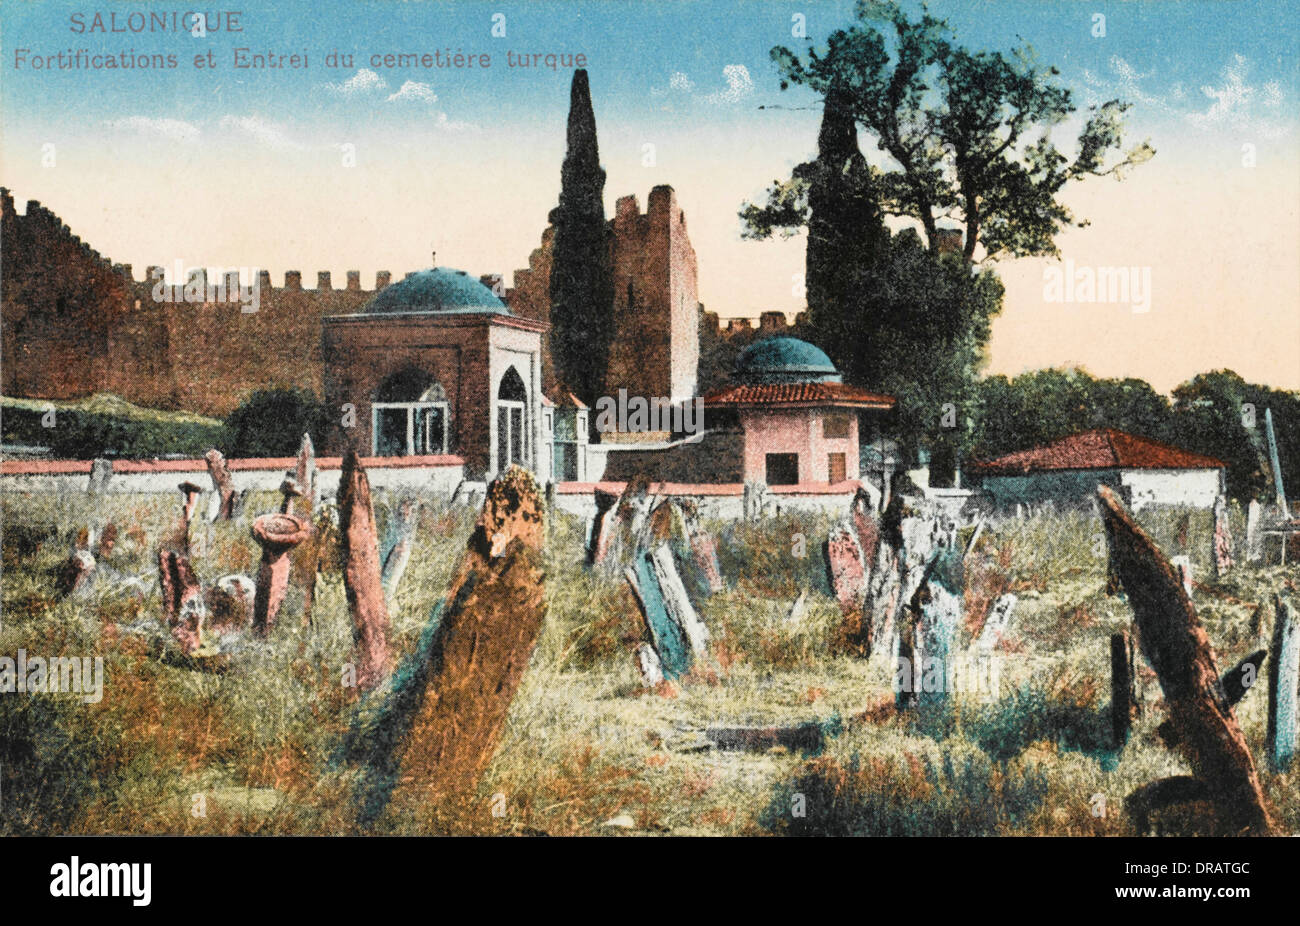 Salonicco, fortificazioni presso il cimitero di turco Foto Stock